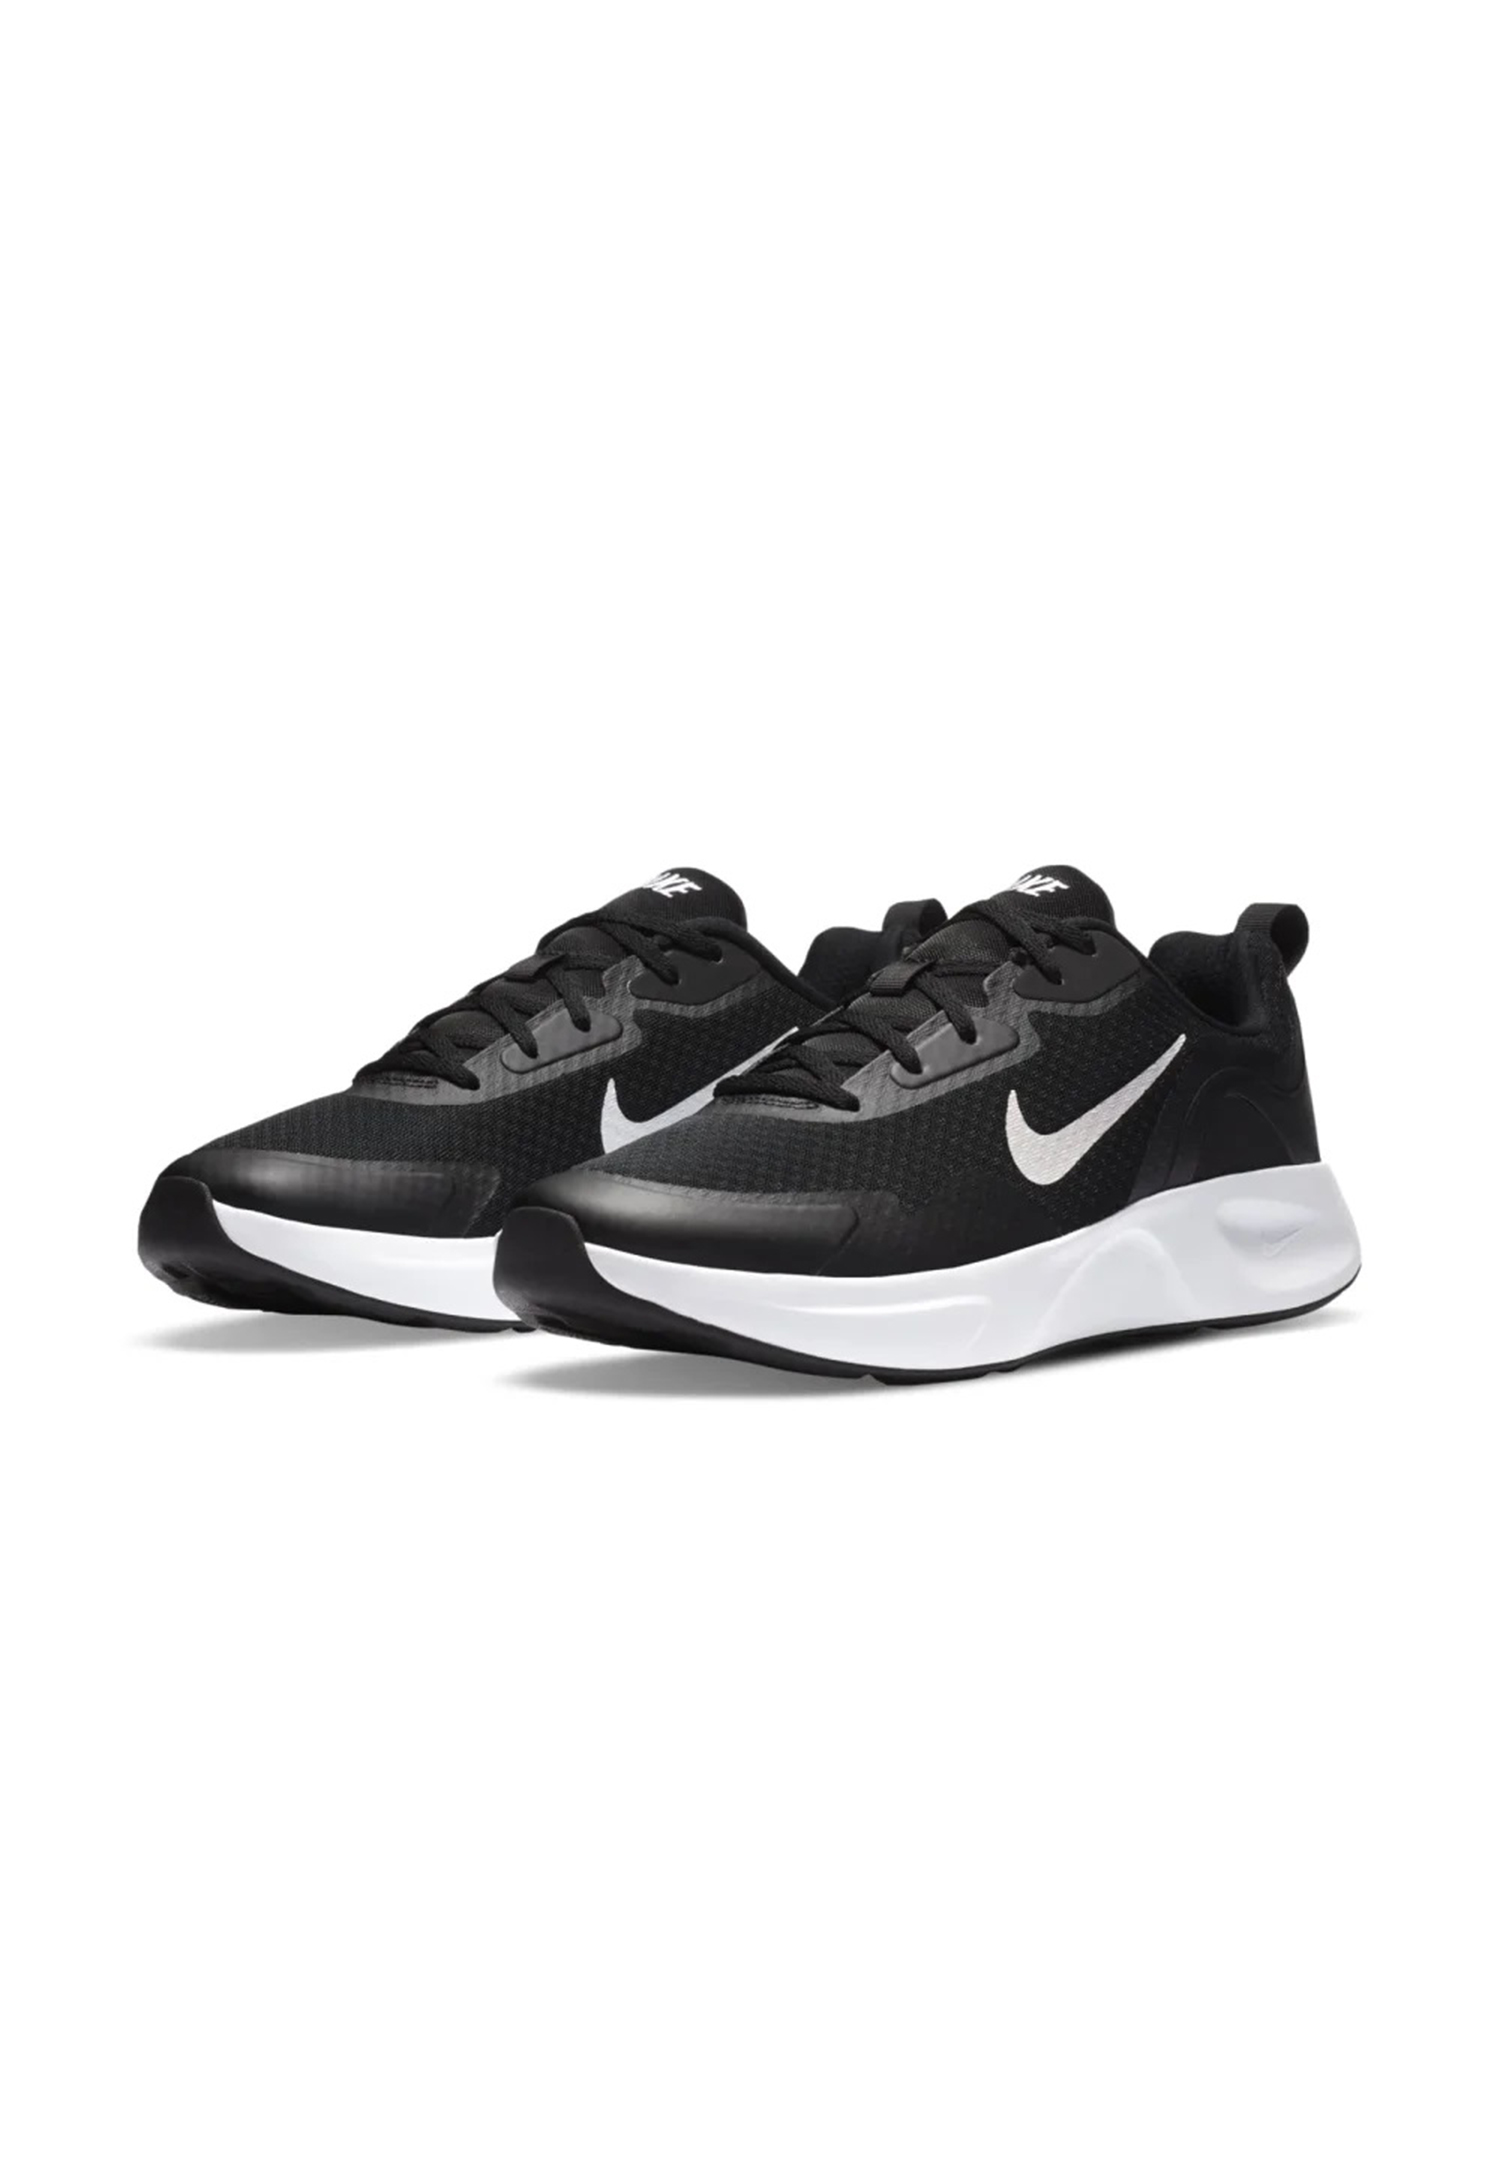 Nike WEARALLDAY Laufschuhe Herren MEN Sneaker Sportschuhe CJ1982 004 schwarz